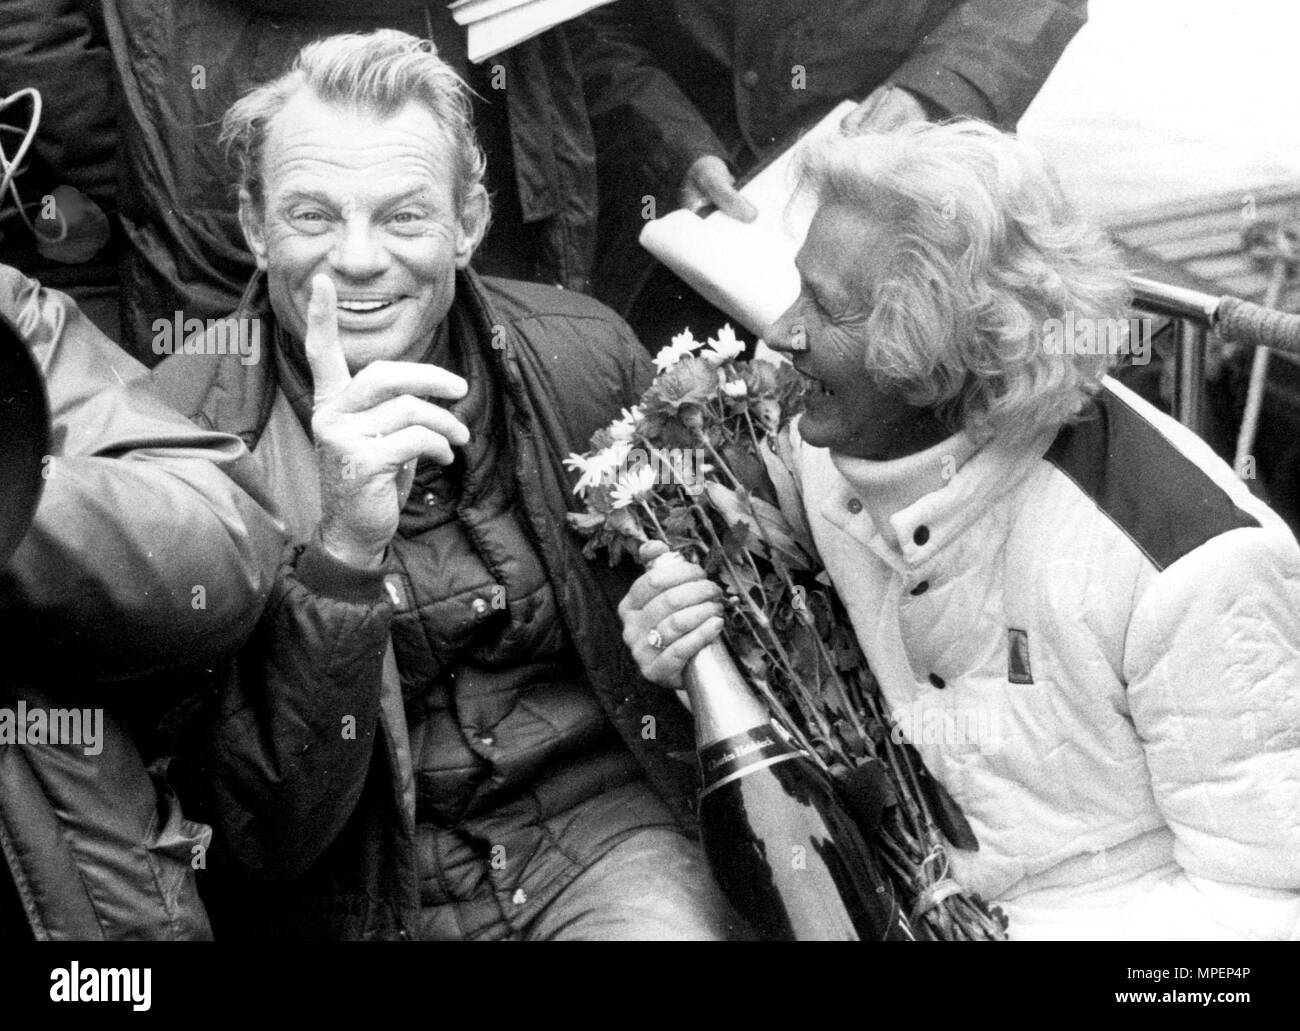 SKIPPER OF ROUND THE WORLD YACHT FLYER, CORNELIUS VAN RIETSCHOTEN REUNITED WITH HIS WIFE INGA AFTER WINNING THE 1978 ROUND THE WORLD YACHT RACE. Stock Photo